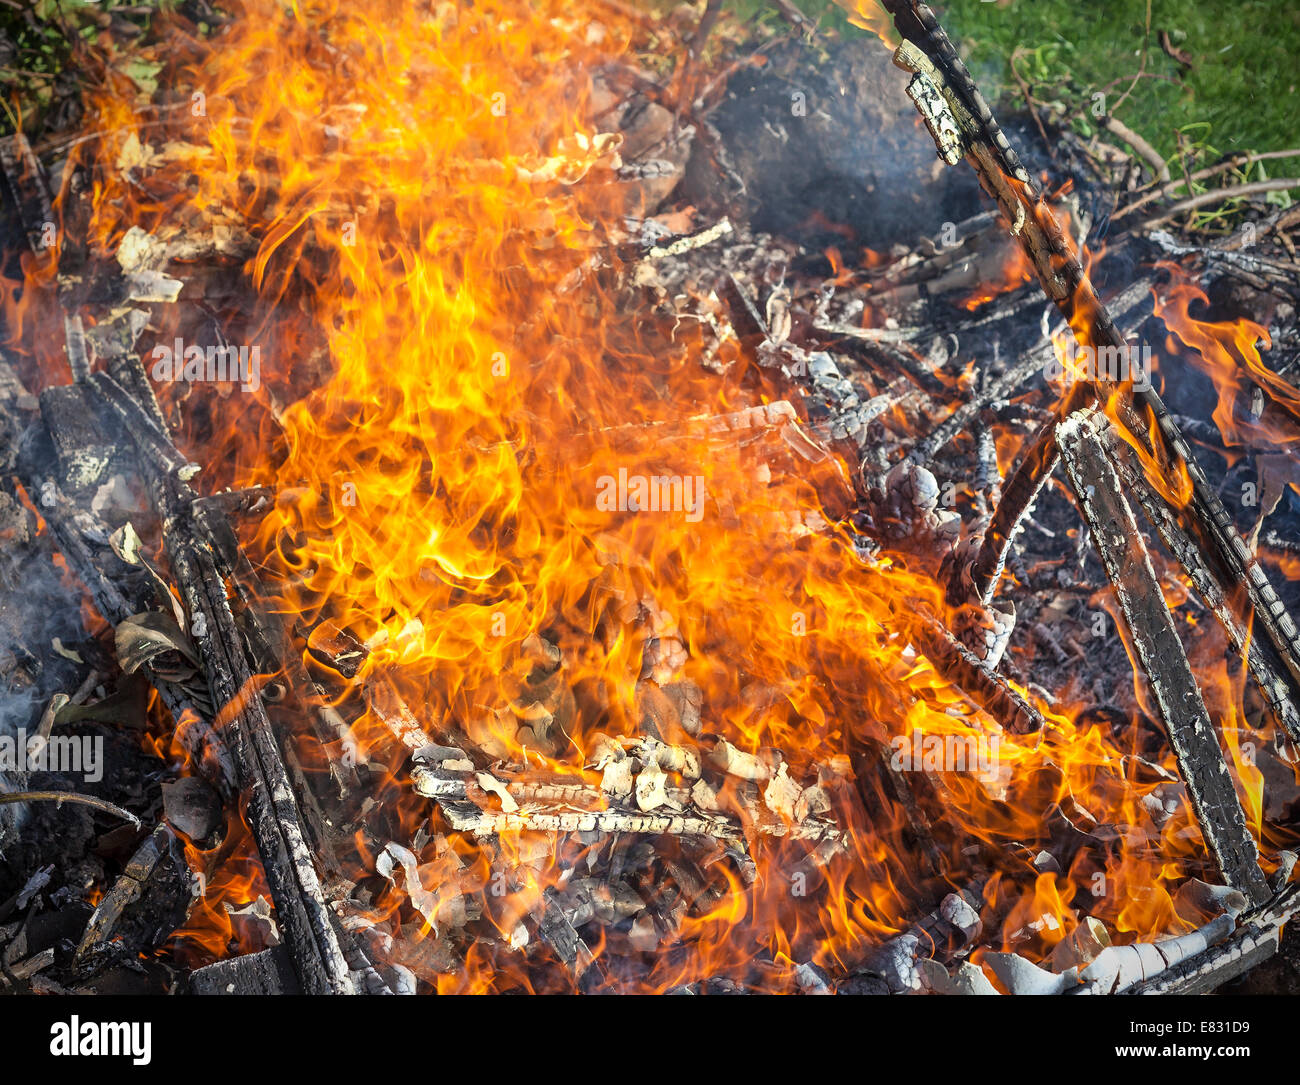 Müll in Brand, illegale Garten ausbrennen. Stockfoto